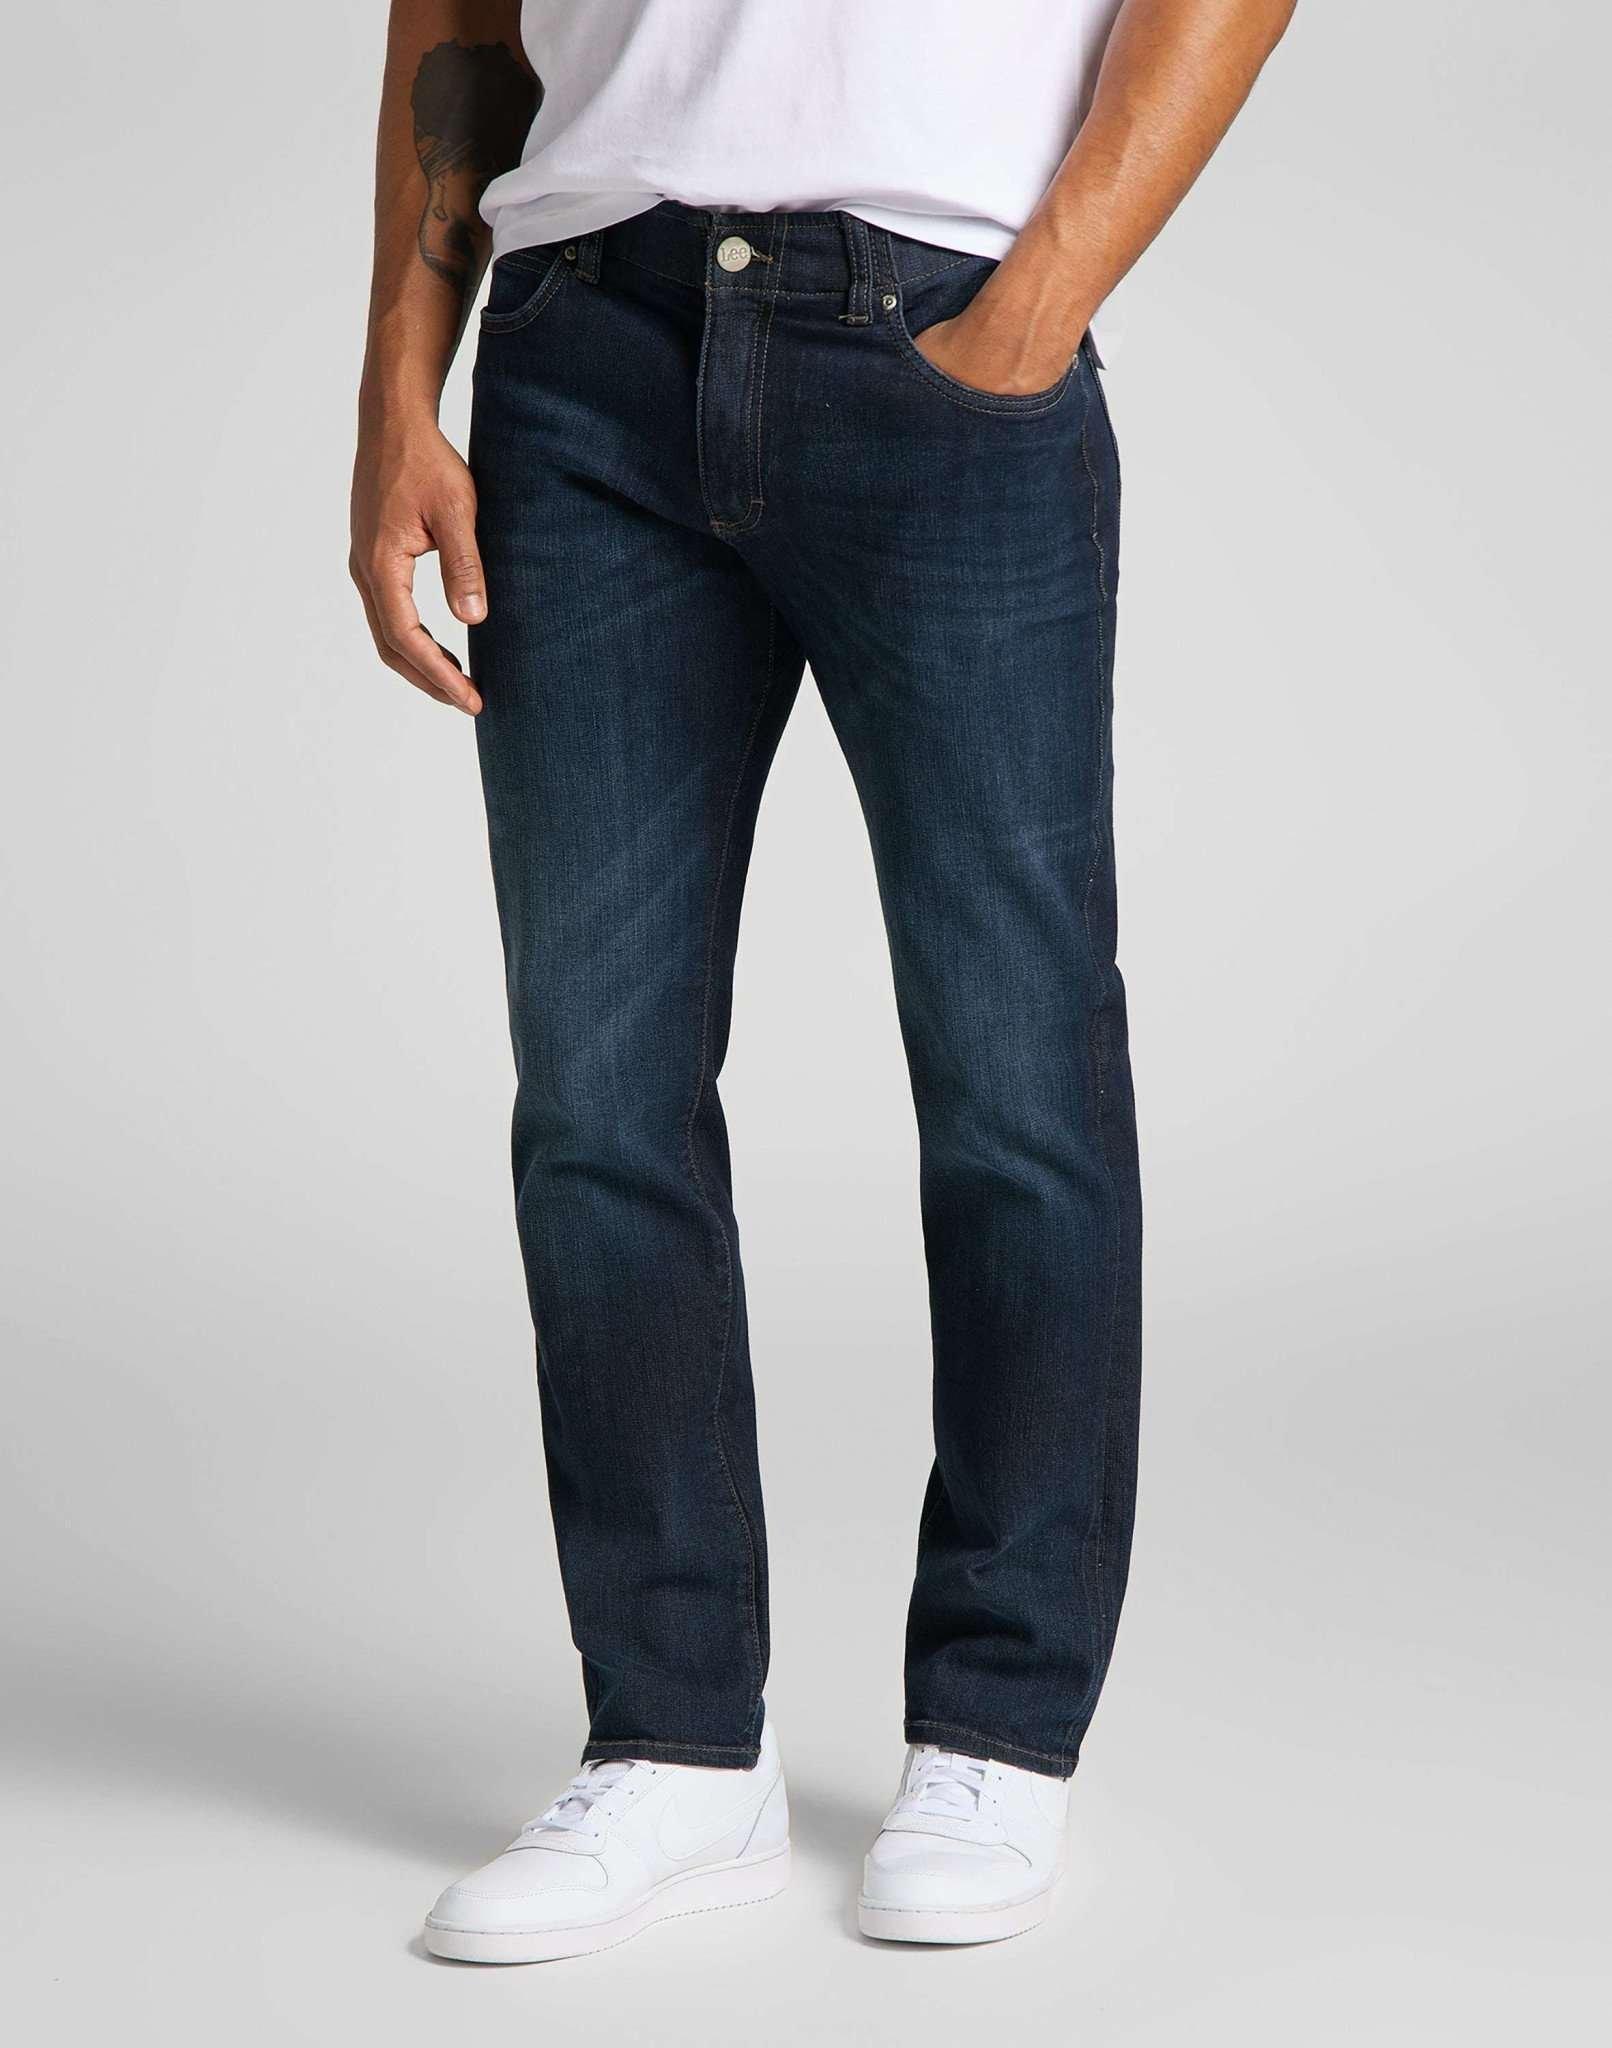 Jeans Straight Leg Xm Herren Blau Denim L30/W34 von Lee